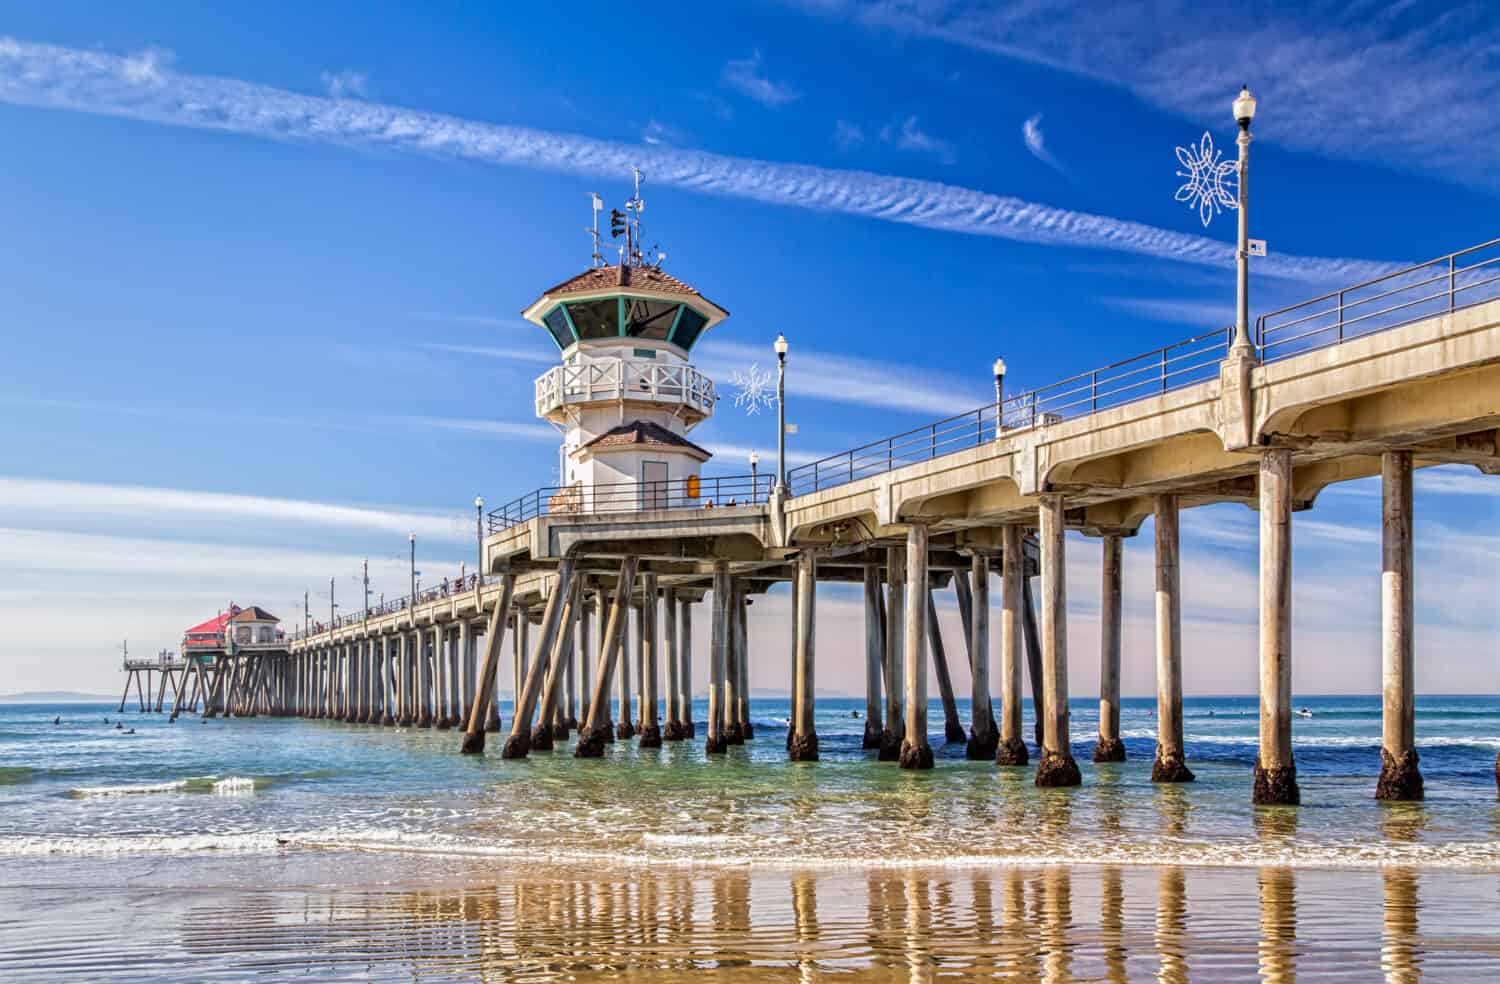 The Huntington Beach Pier in Huntington Beach, California.